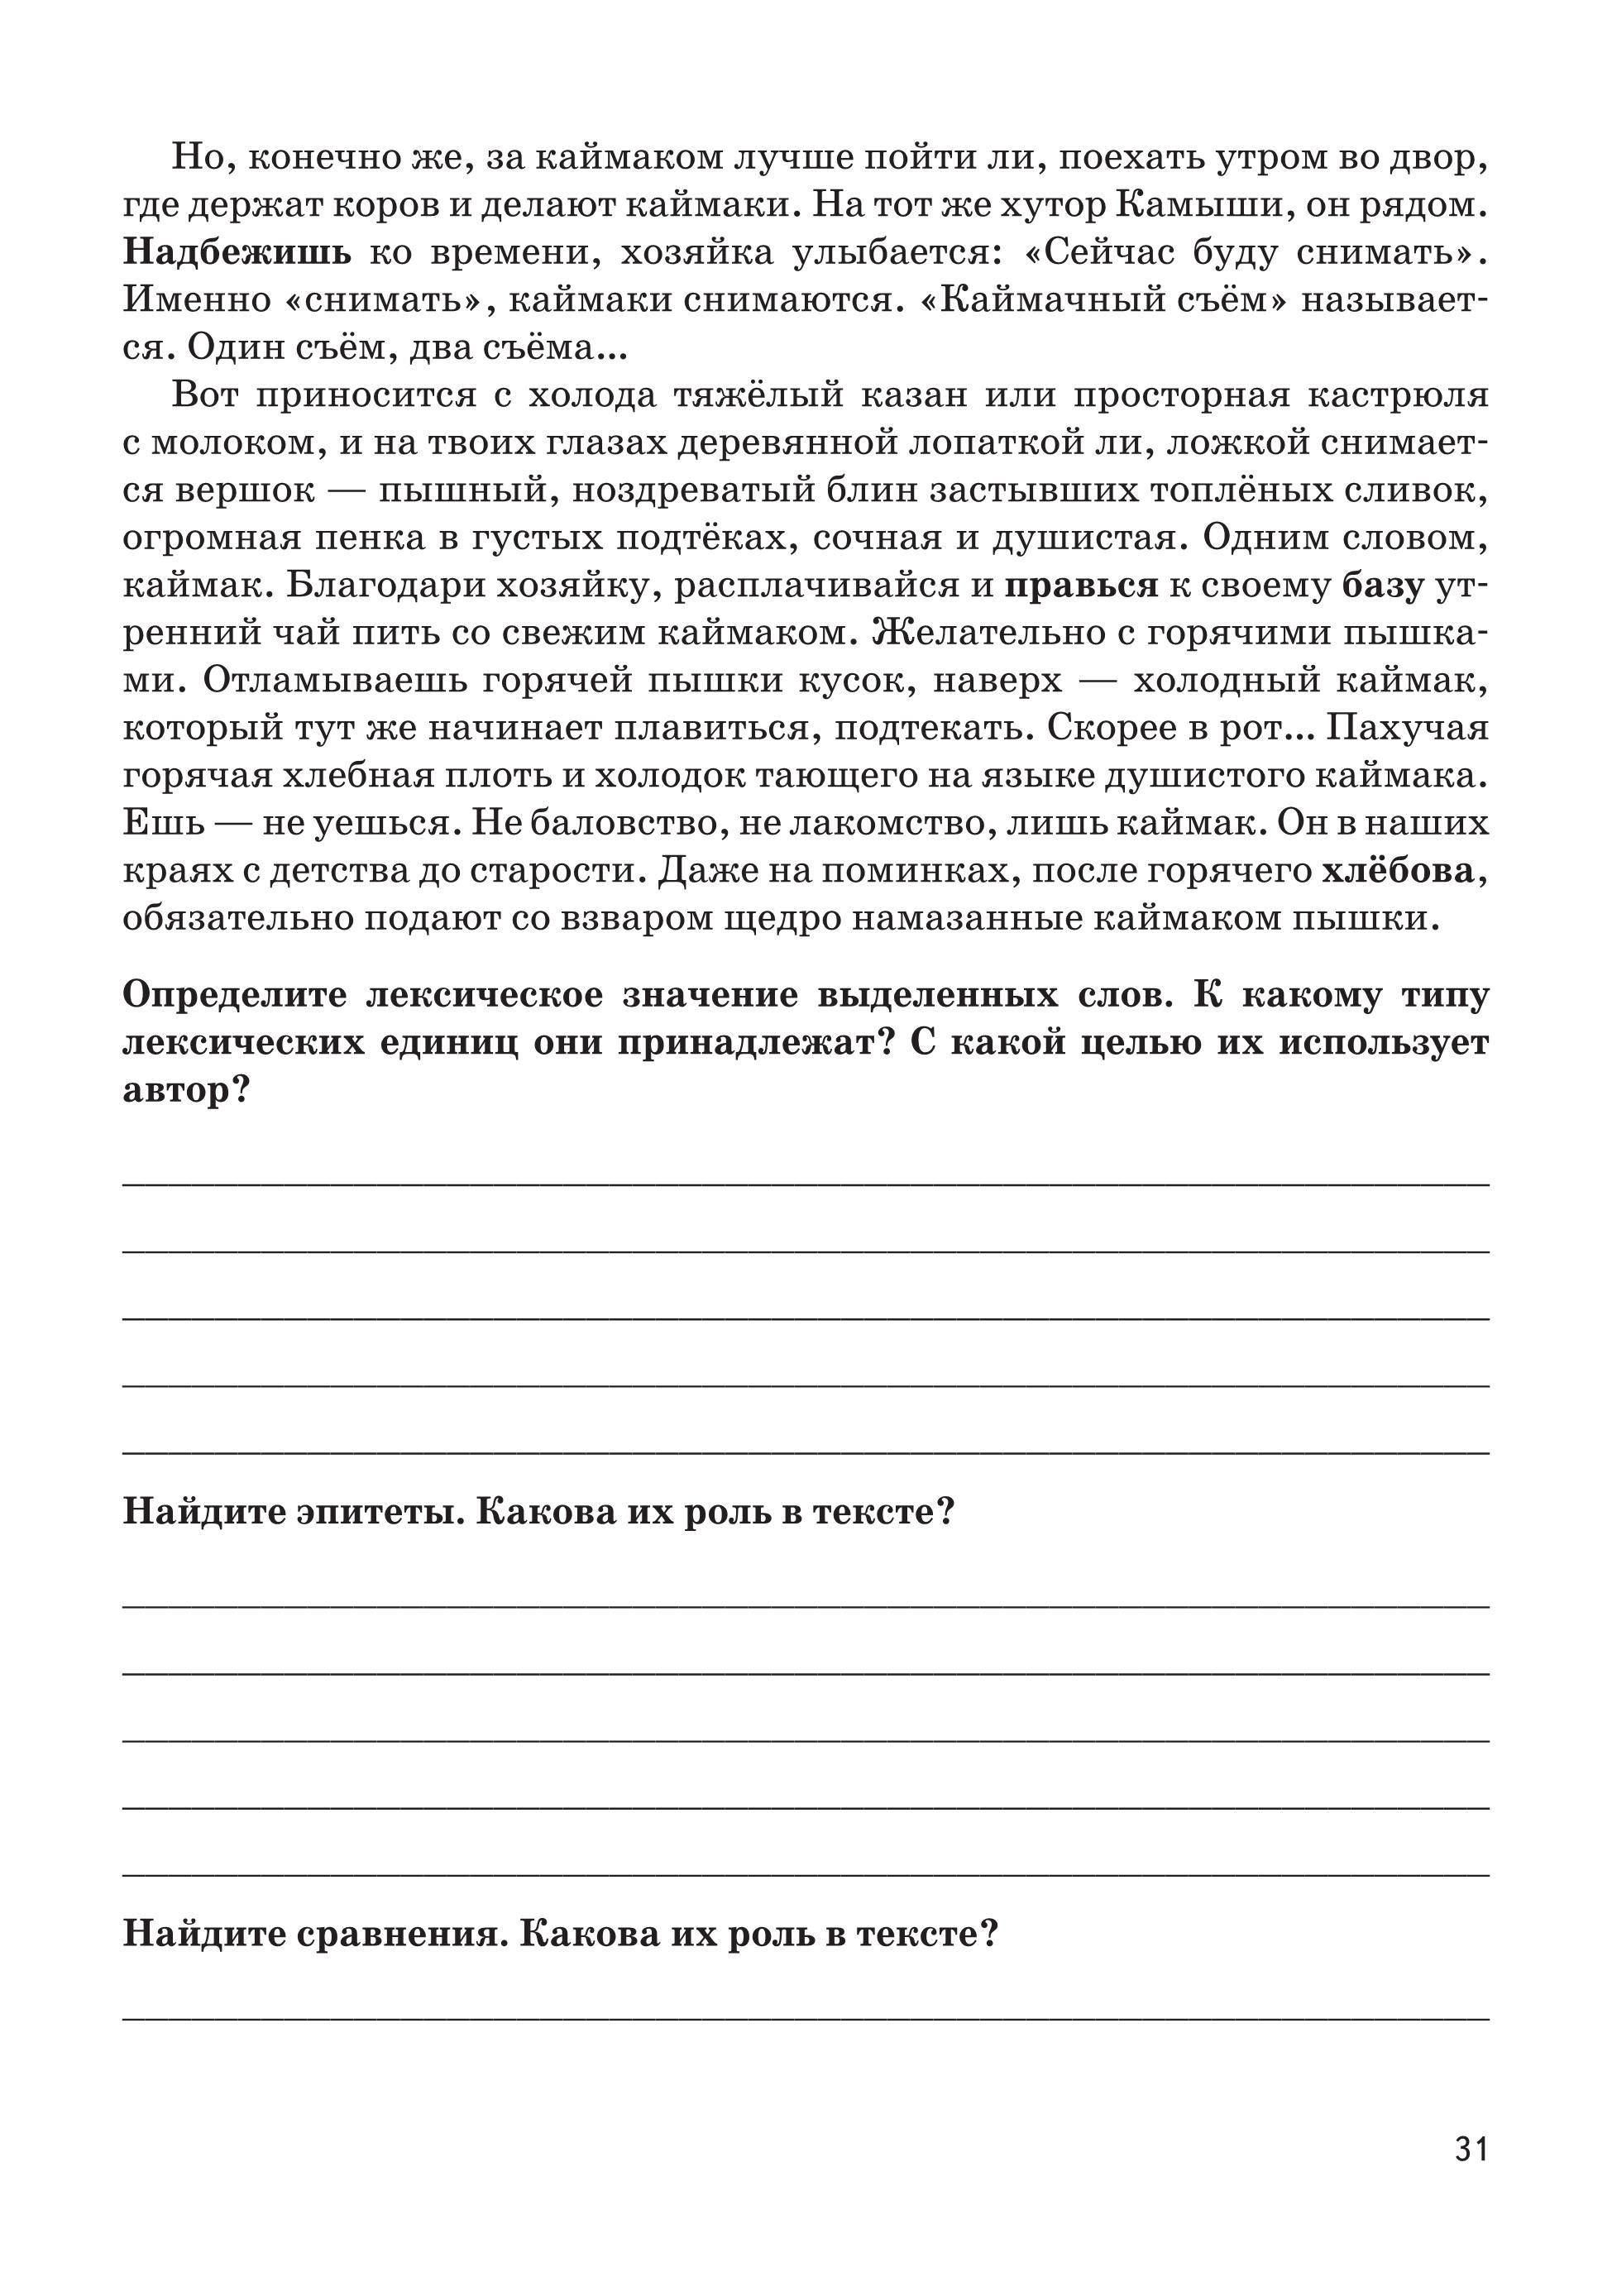 Русский язык. Средства выразительности на ОГЭ и ЕГЭ. 3-е изд.